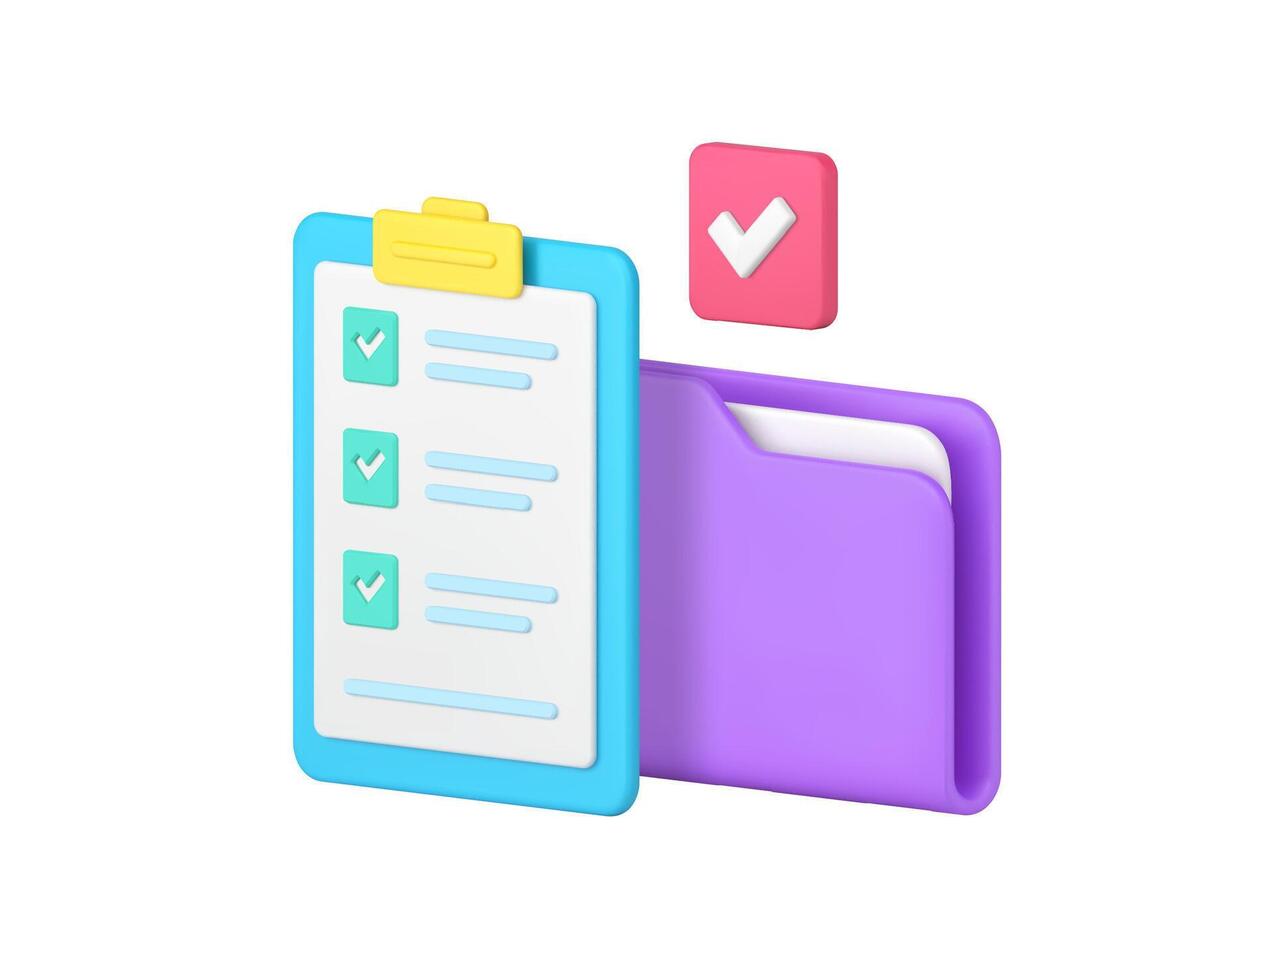 documento trabajo negocio productividad eficiencia planificación Lista de Verificación archivo carpeta 3d icono vector